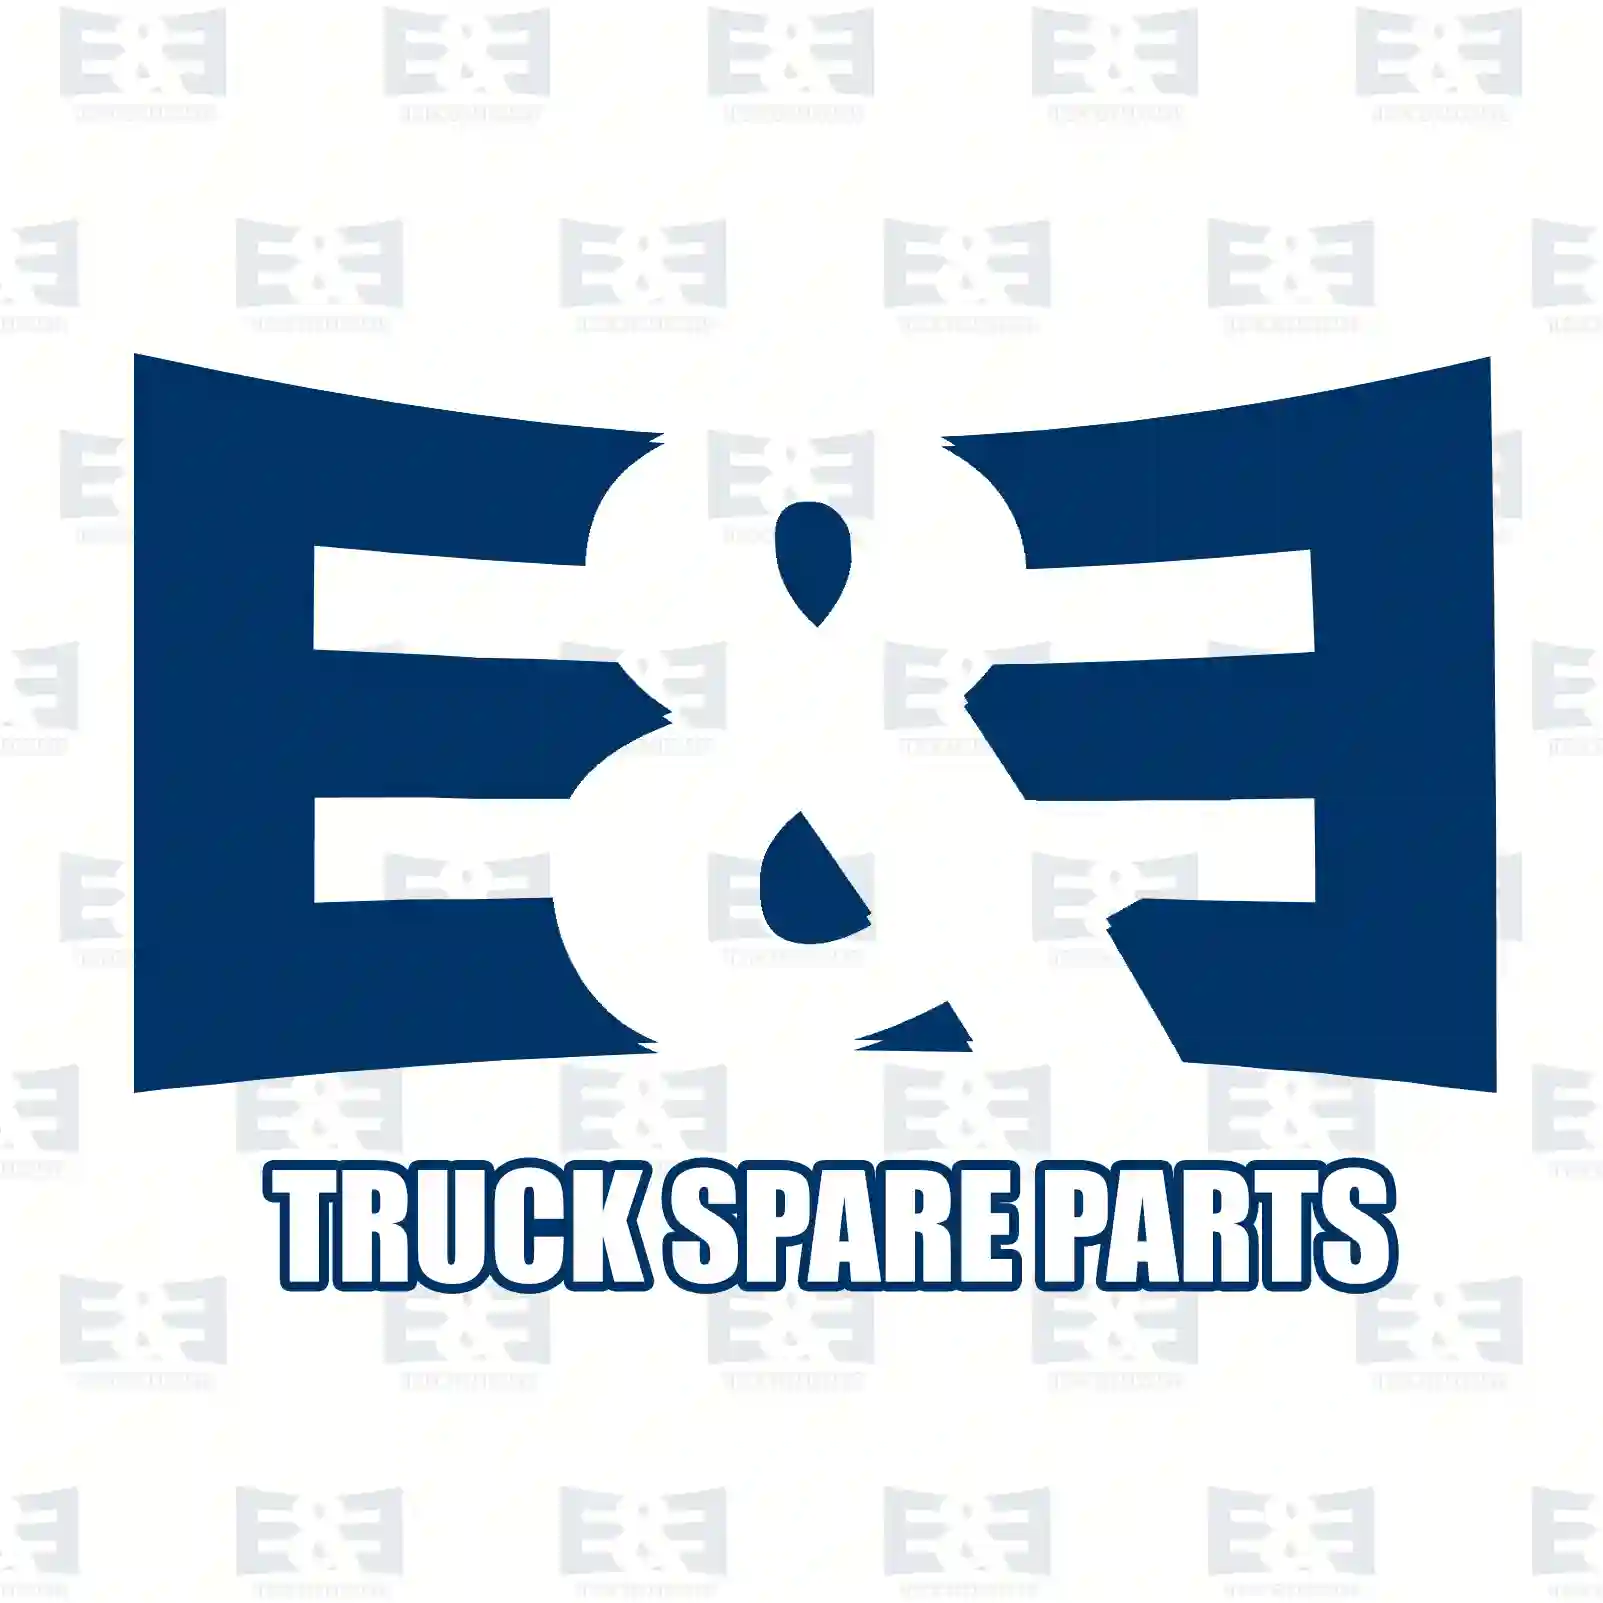 Oil separator, 2E2209879, 21373547, 21975945, 22877306 ||  2E2209879 E&E Truck Spare Parts | Truck Spare Parts, Auotomotive Spare Parts Oil separator, 2E2209879, 21373547, 21975945, 22877306 ||  2E2209879 E&E Truck Spare Parts | Truck Spare Parts, Auotomotive Spare Parts